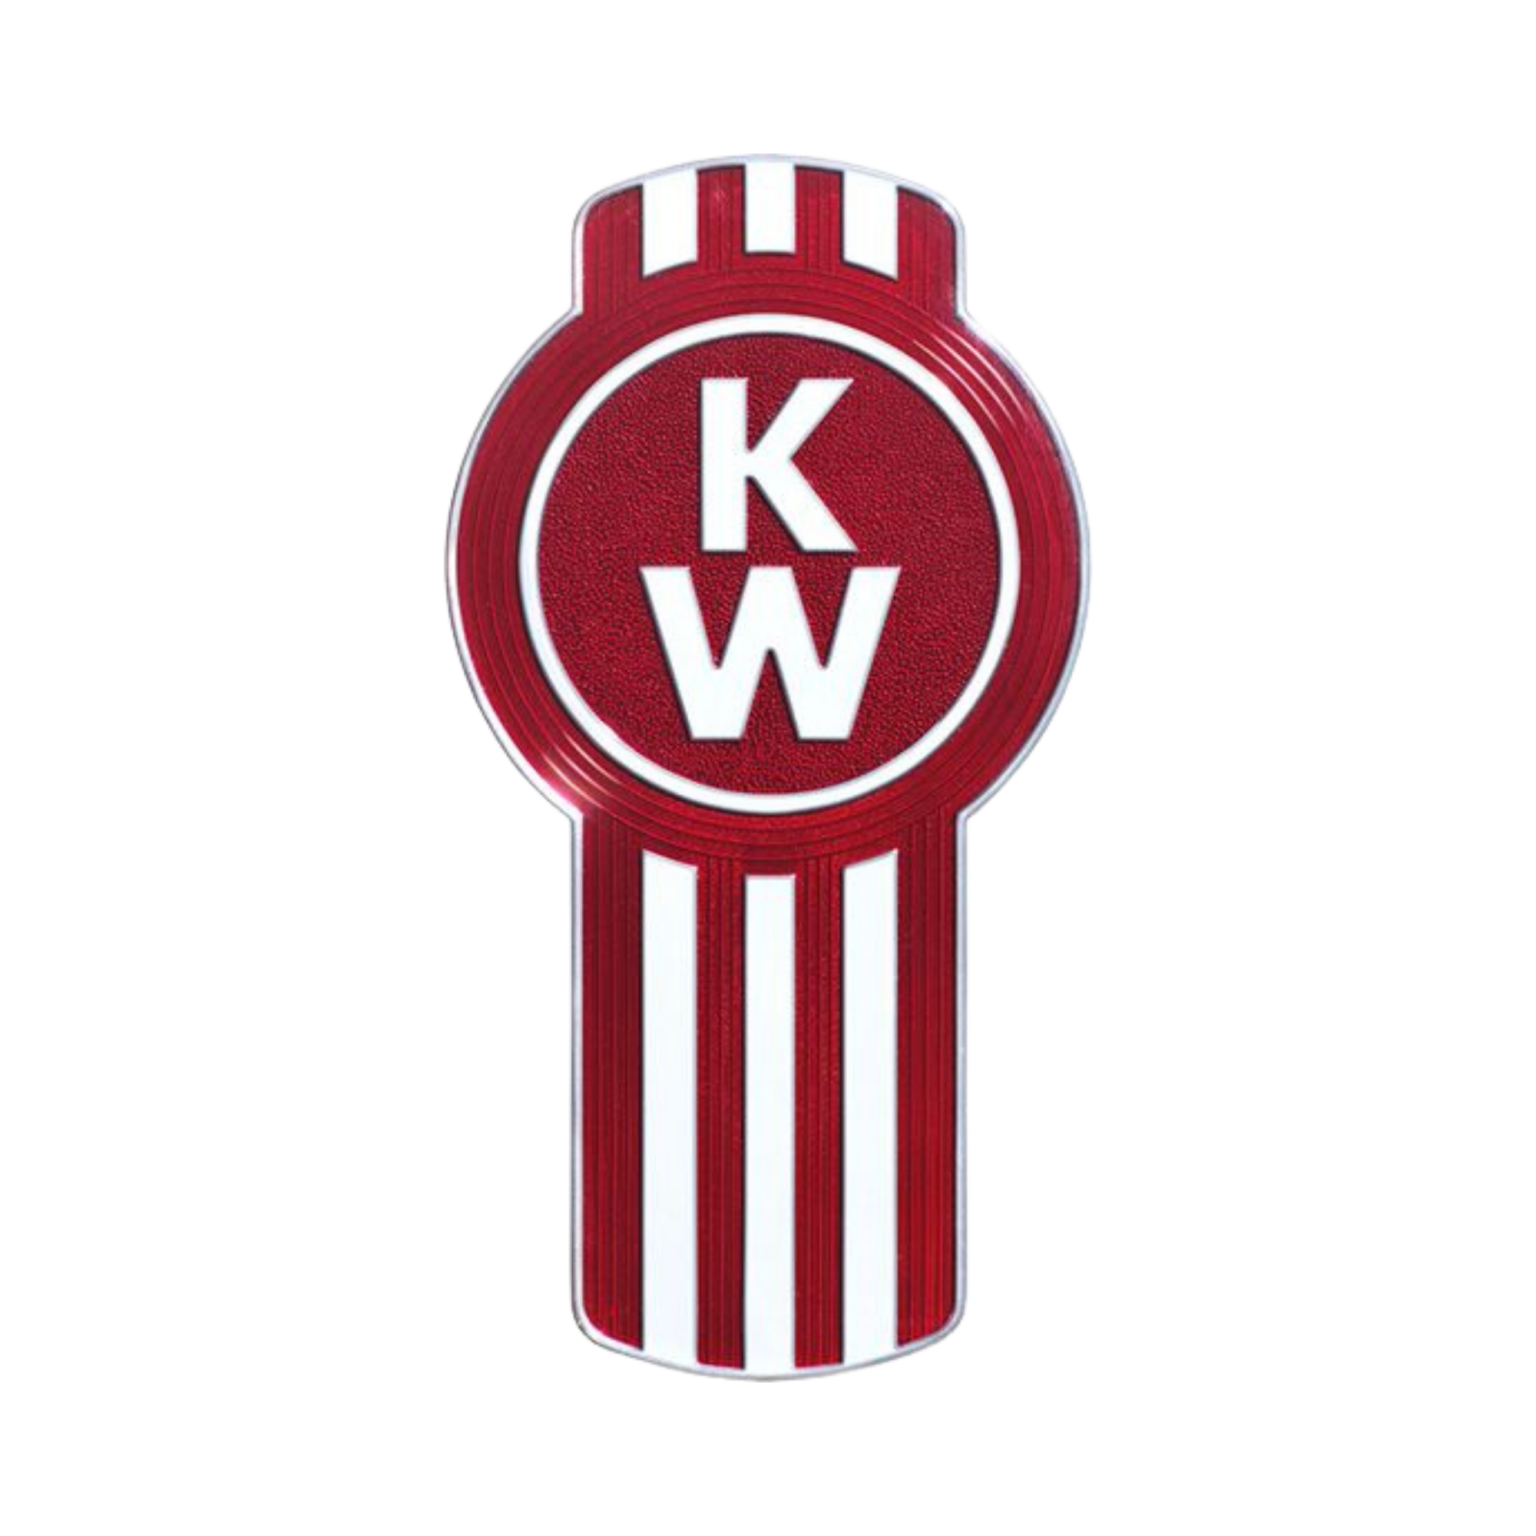 Kenworth emblems